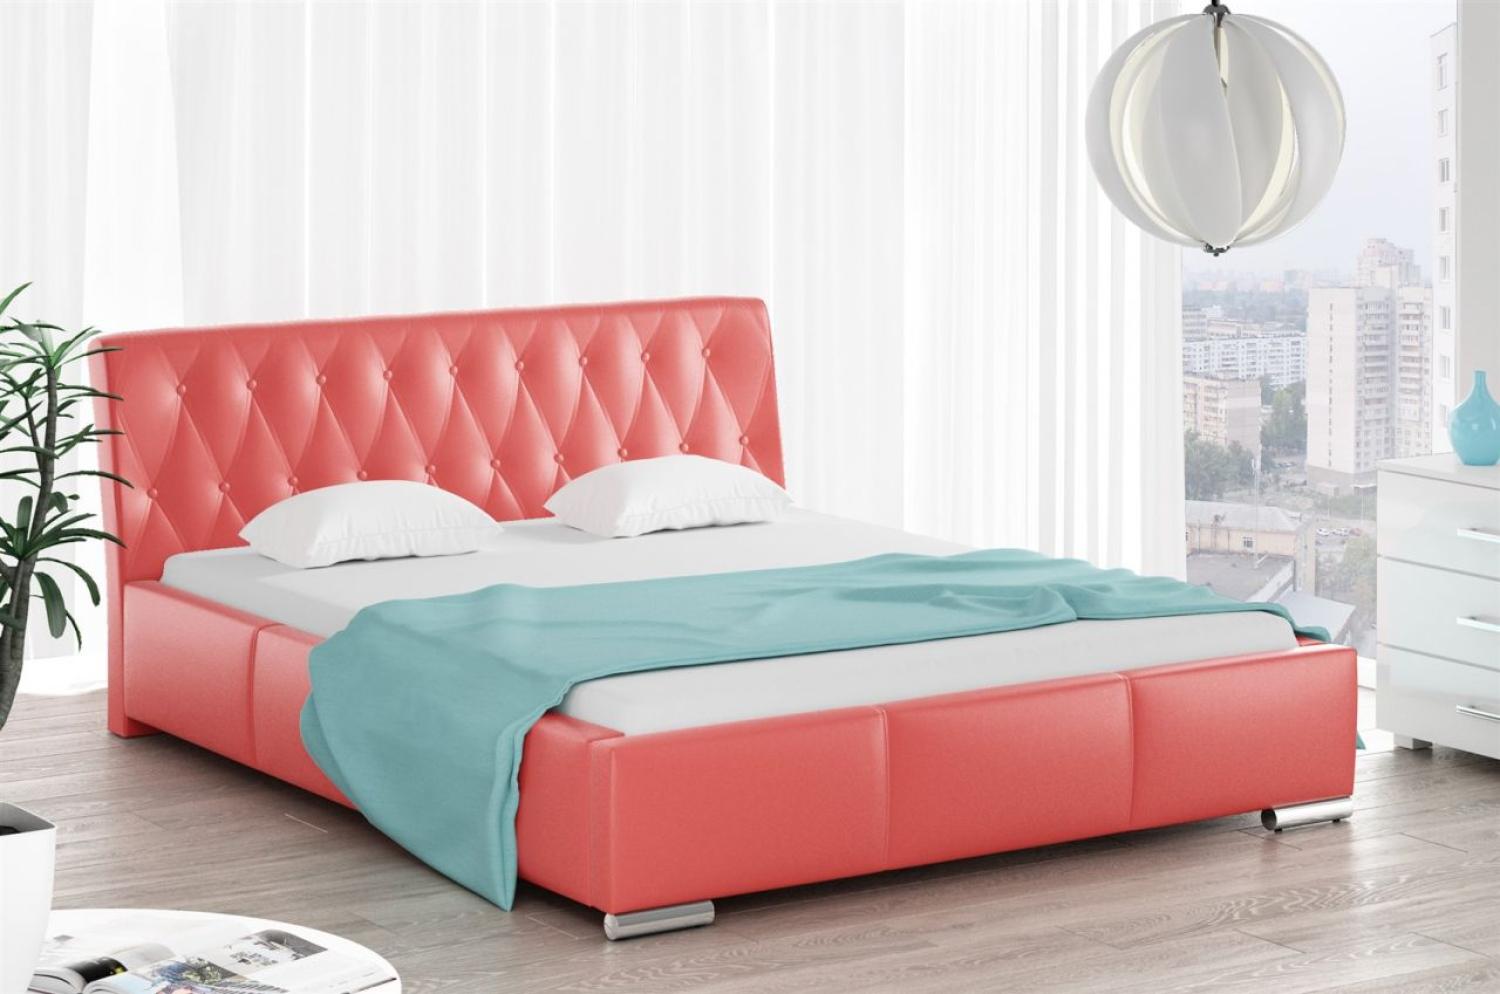 Polsterbett Bett Doppelbett THORE Kunstleder Rot 160x200cm Bild 1